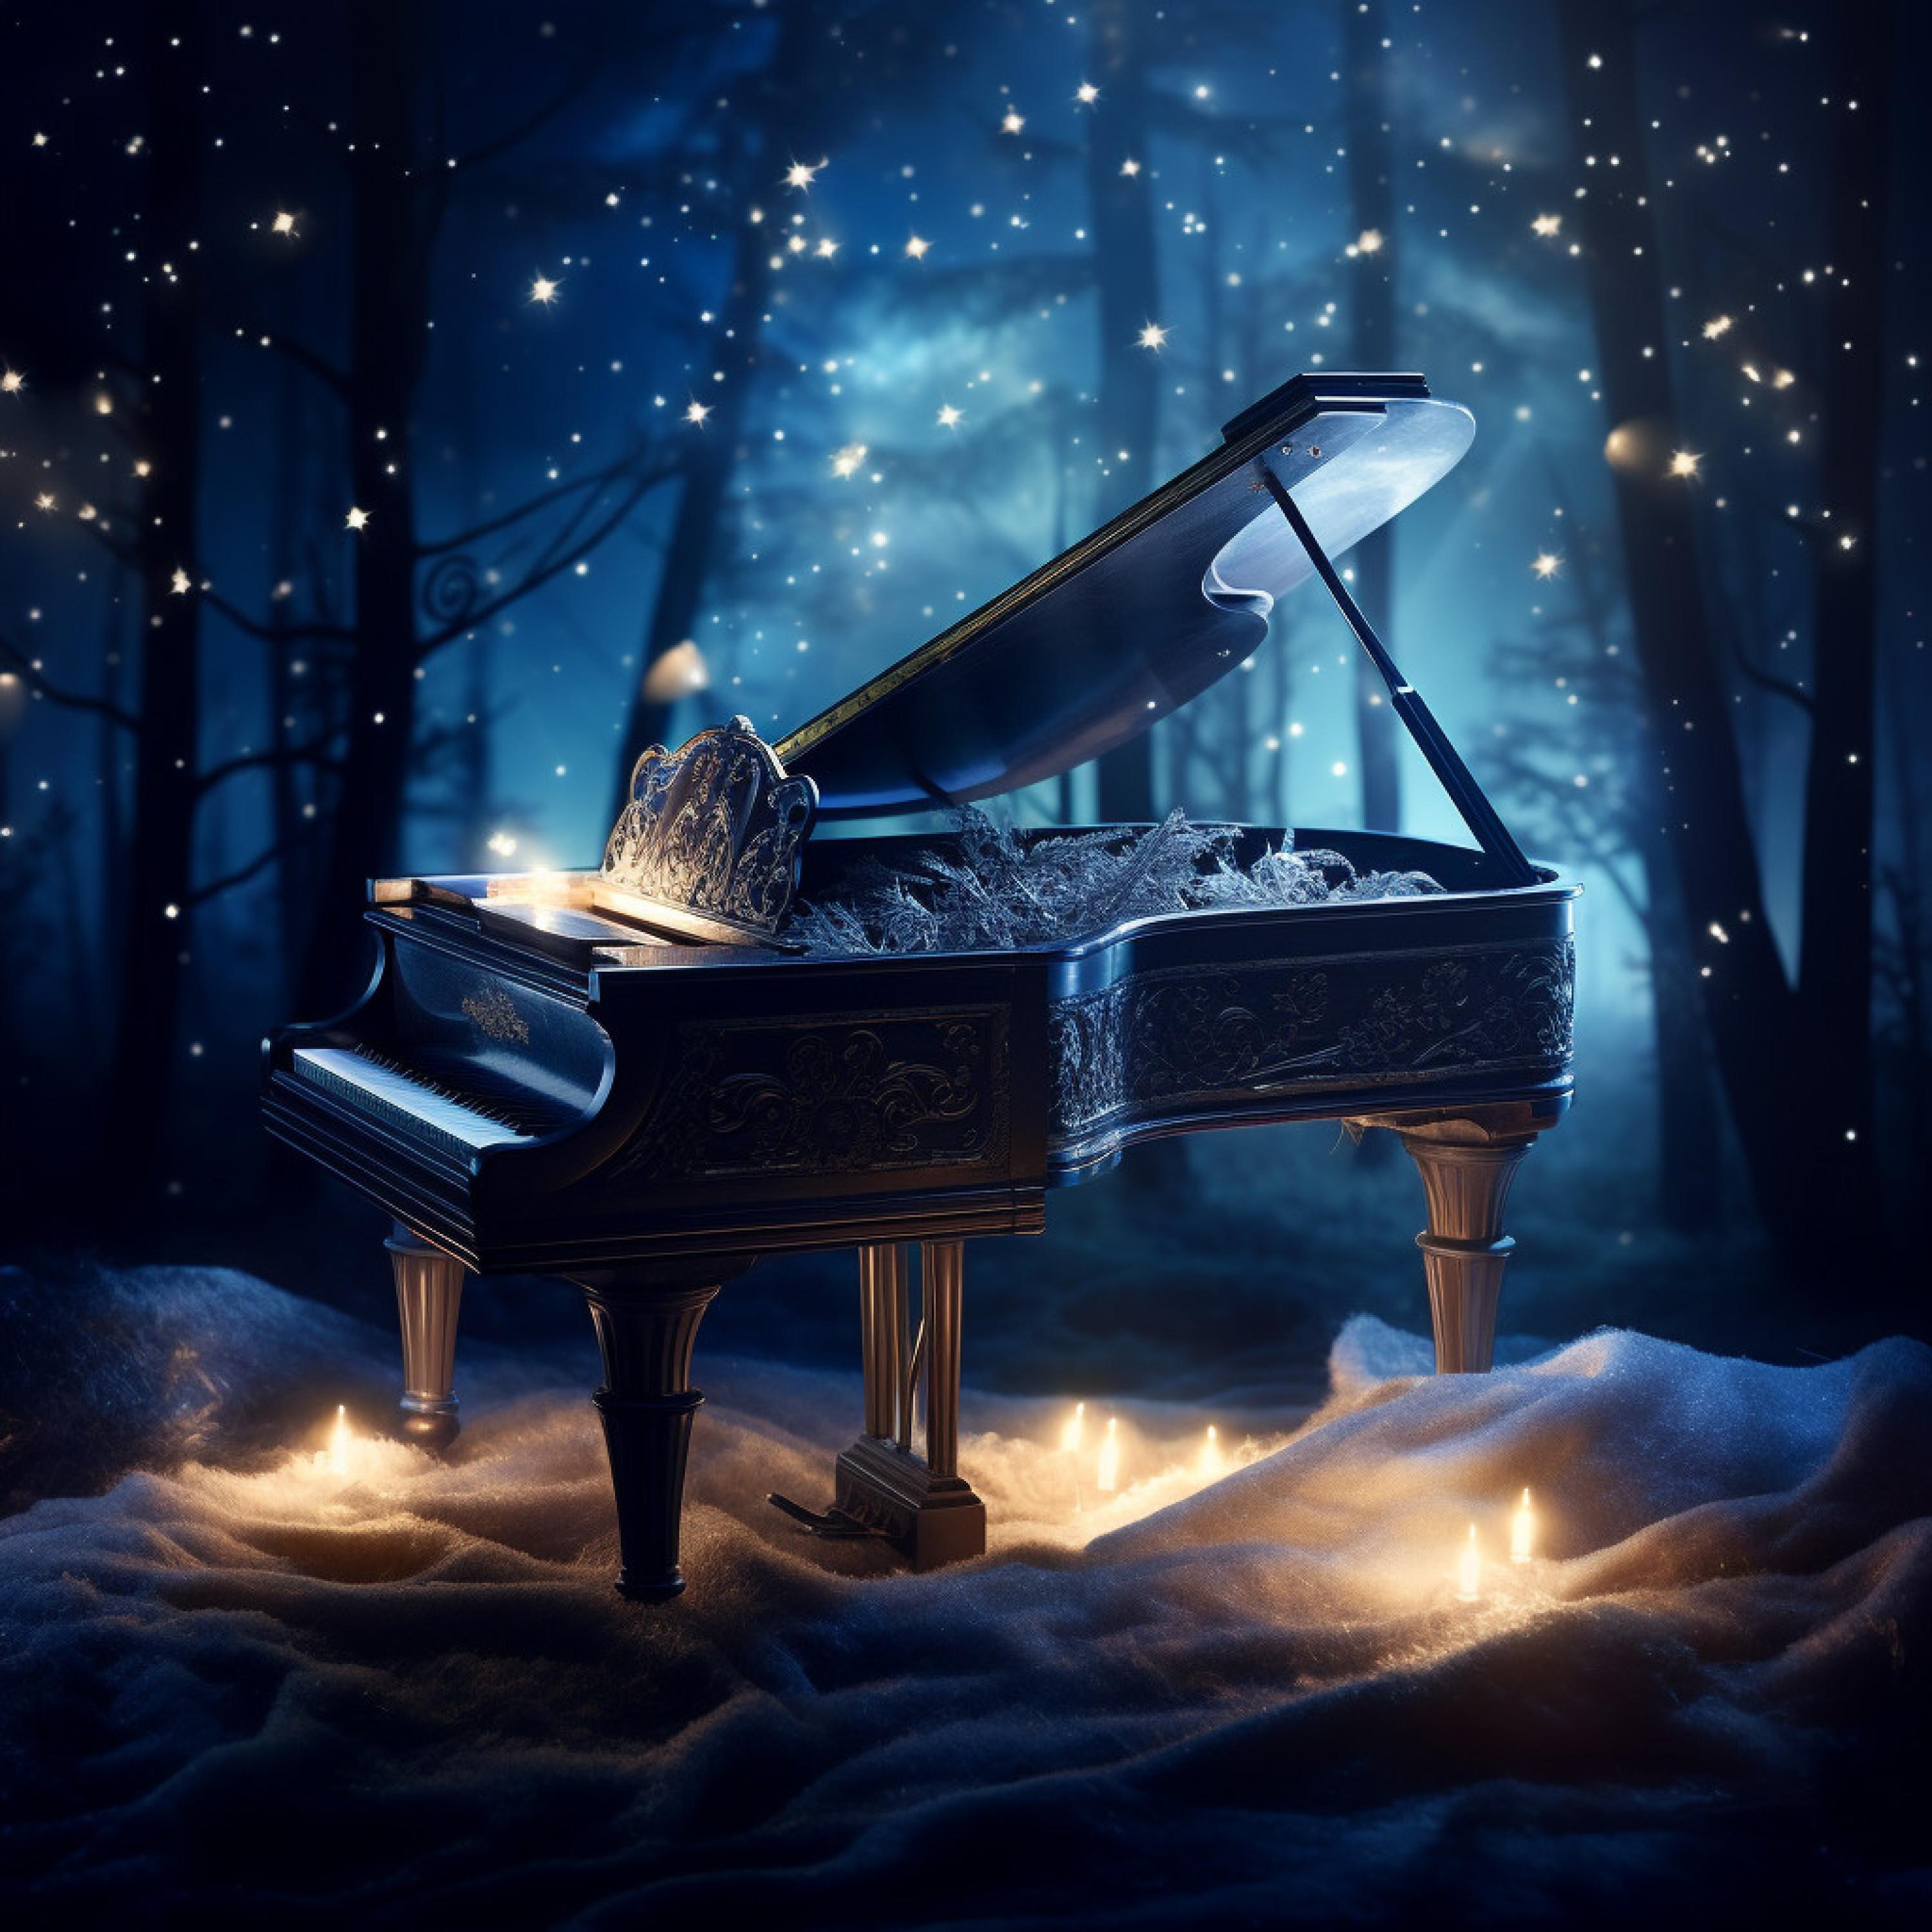 sleepy planet - Sleepy Piano Moonlight Hush